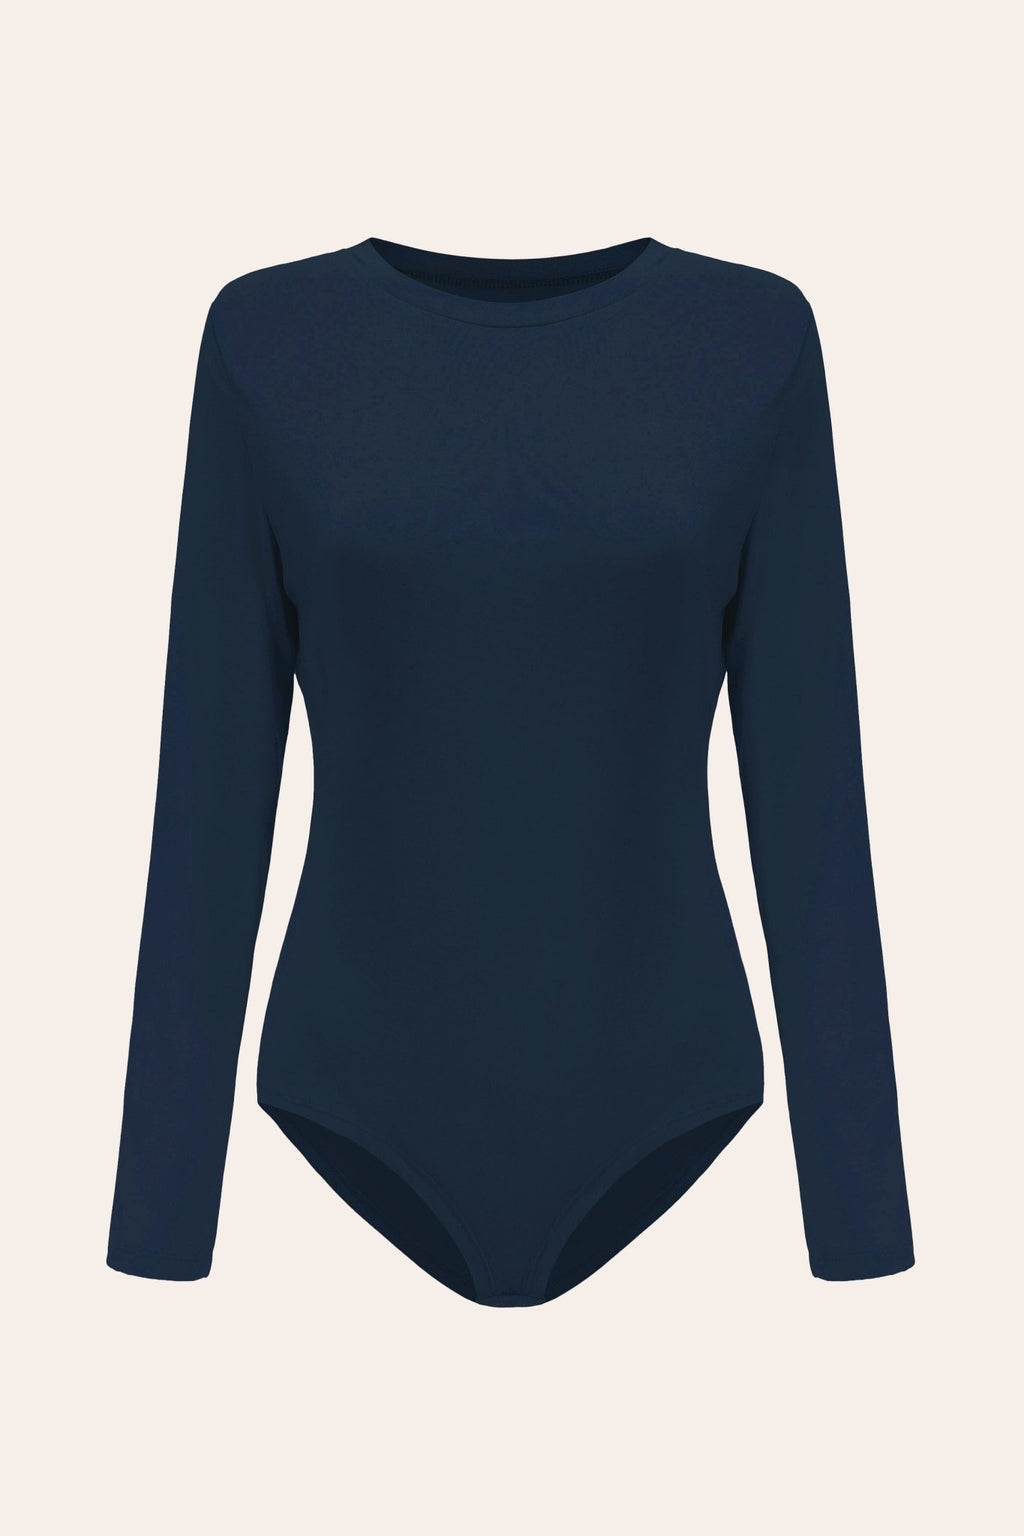 POSESHE Stylish N.6 V-Neck Plus-Size Bodysuit - Comfort & Versatility